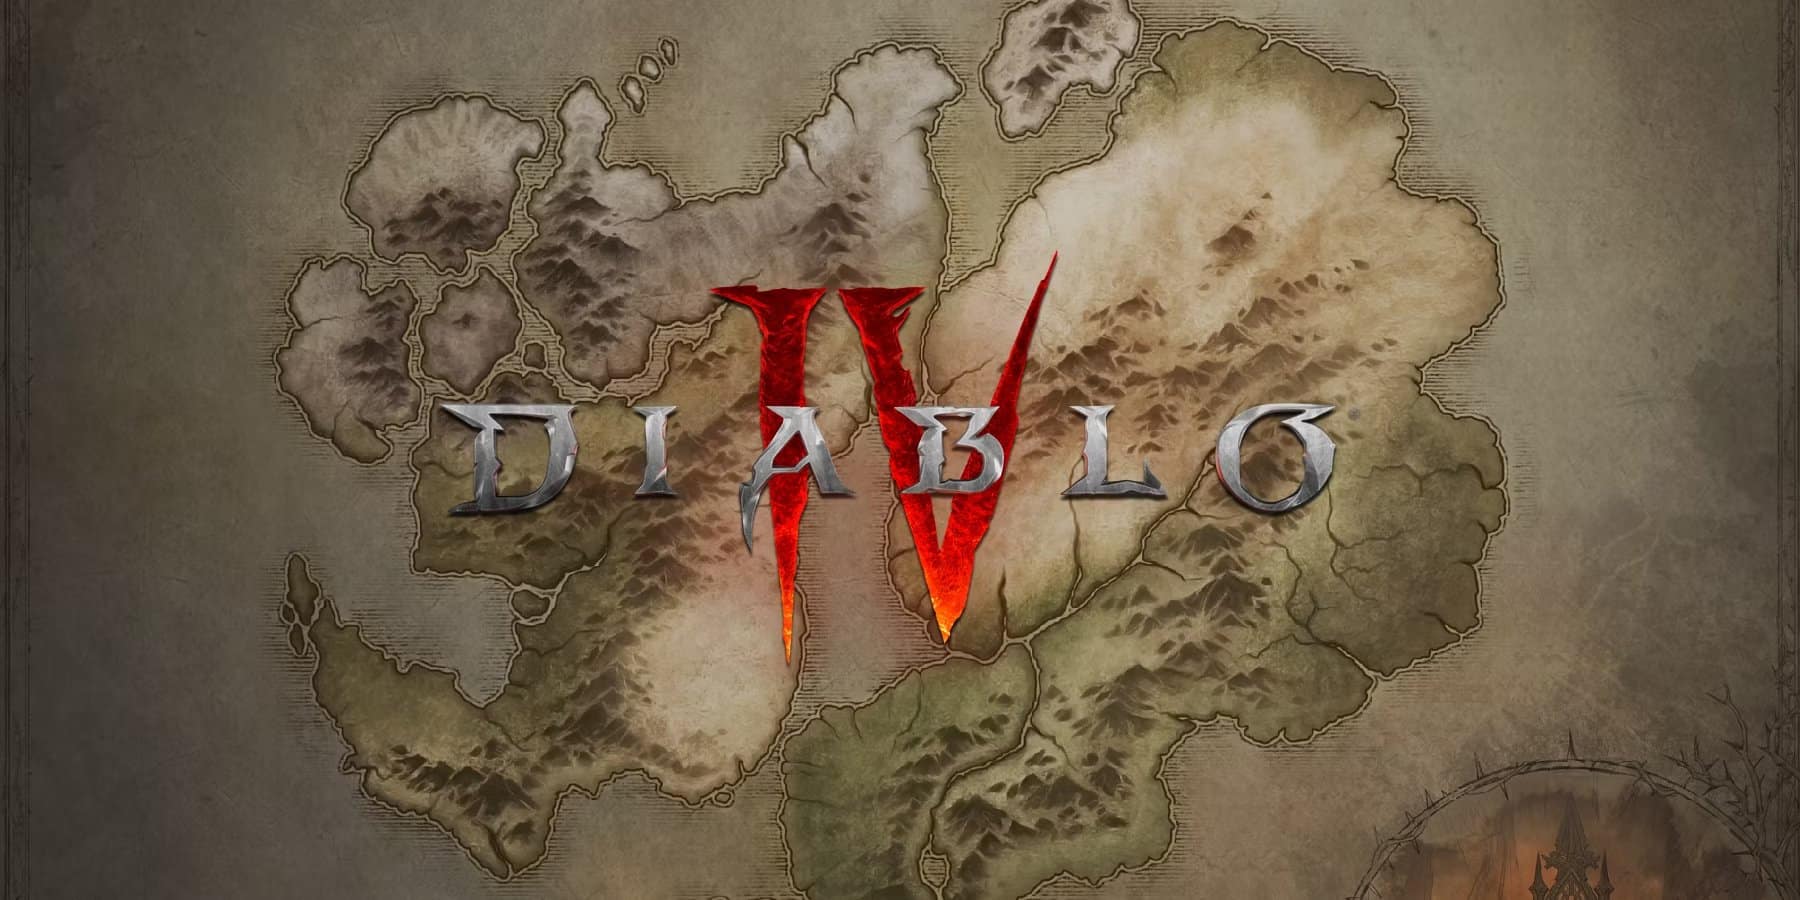 Underroot Dungeon Walkthrough Diablo 4 